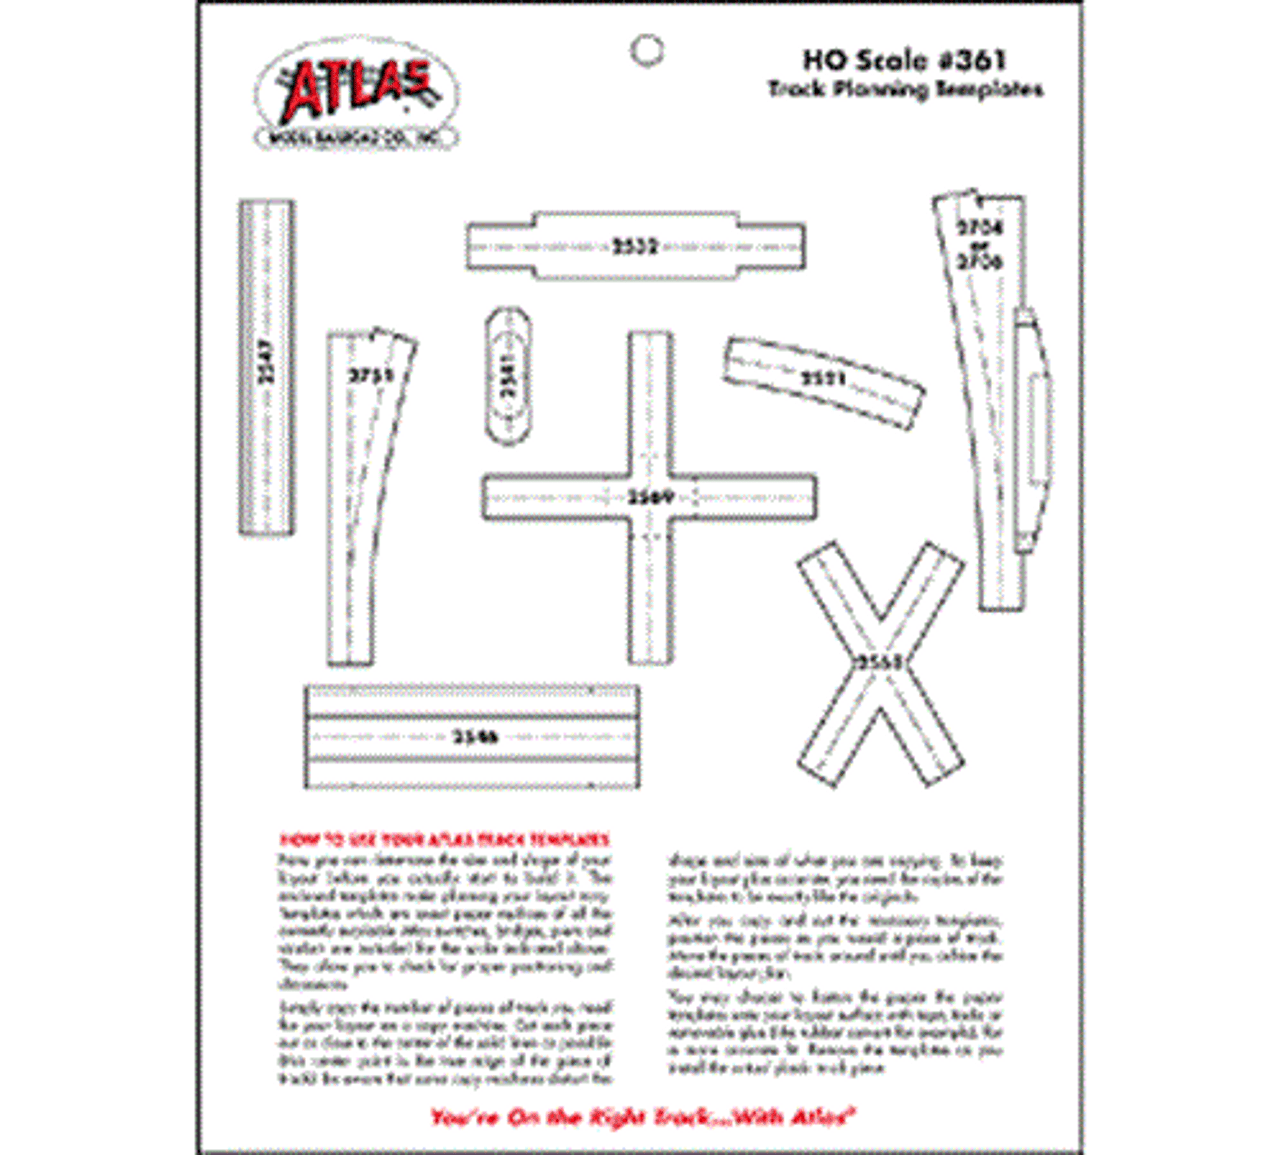 Atlas 0361 Ho Track Planning Templates